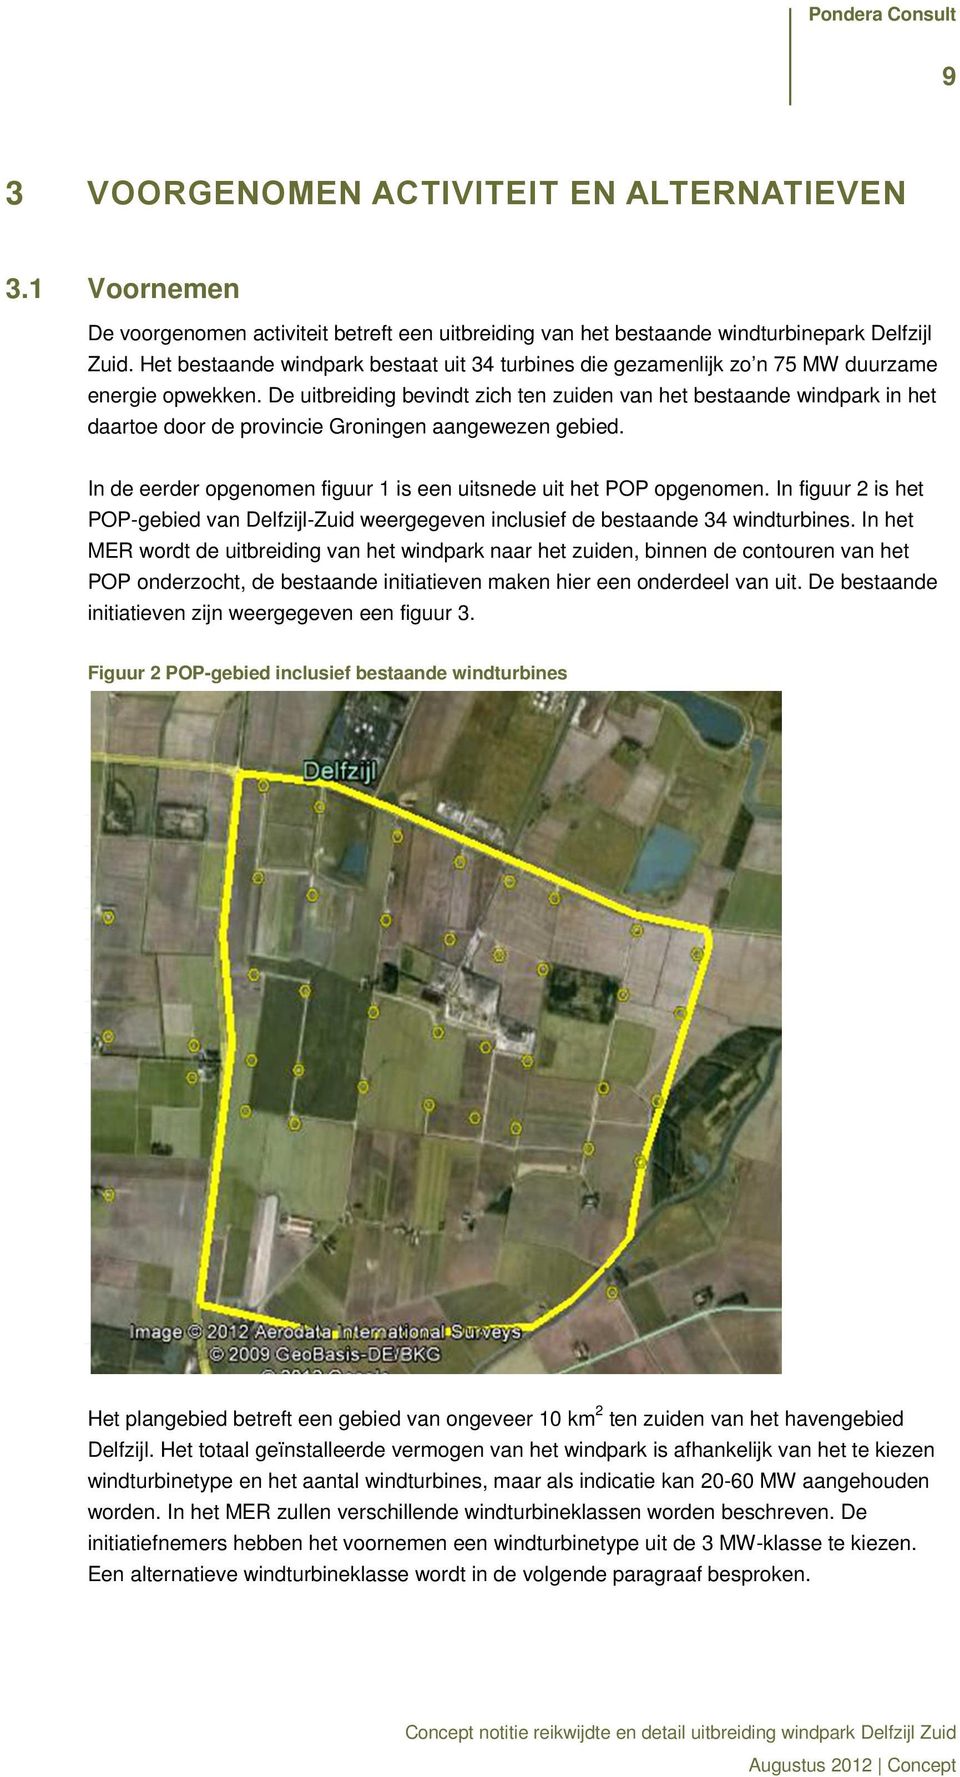 De uitbreiding bevindt zich ten zuiden van het bestaande windpark in het daartoe door de provincie Groningen aangewezen gebied. In de eerder opgenomen figuur 1 is een uitsnede uit het POP opgenomen.